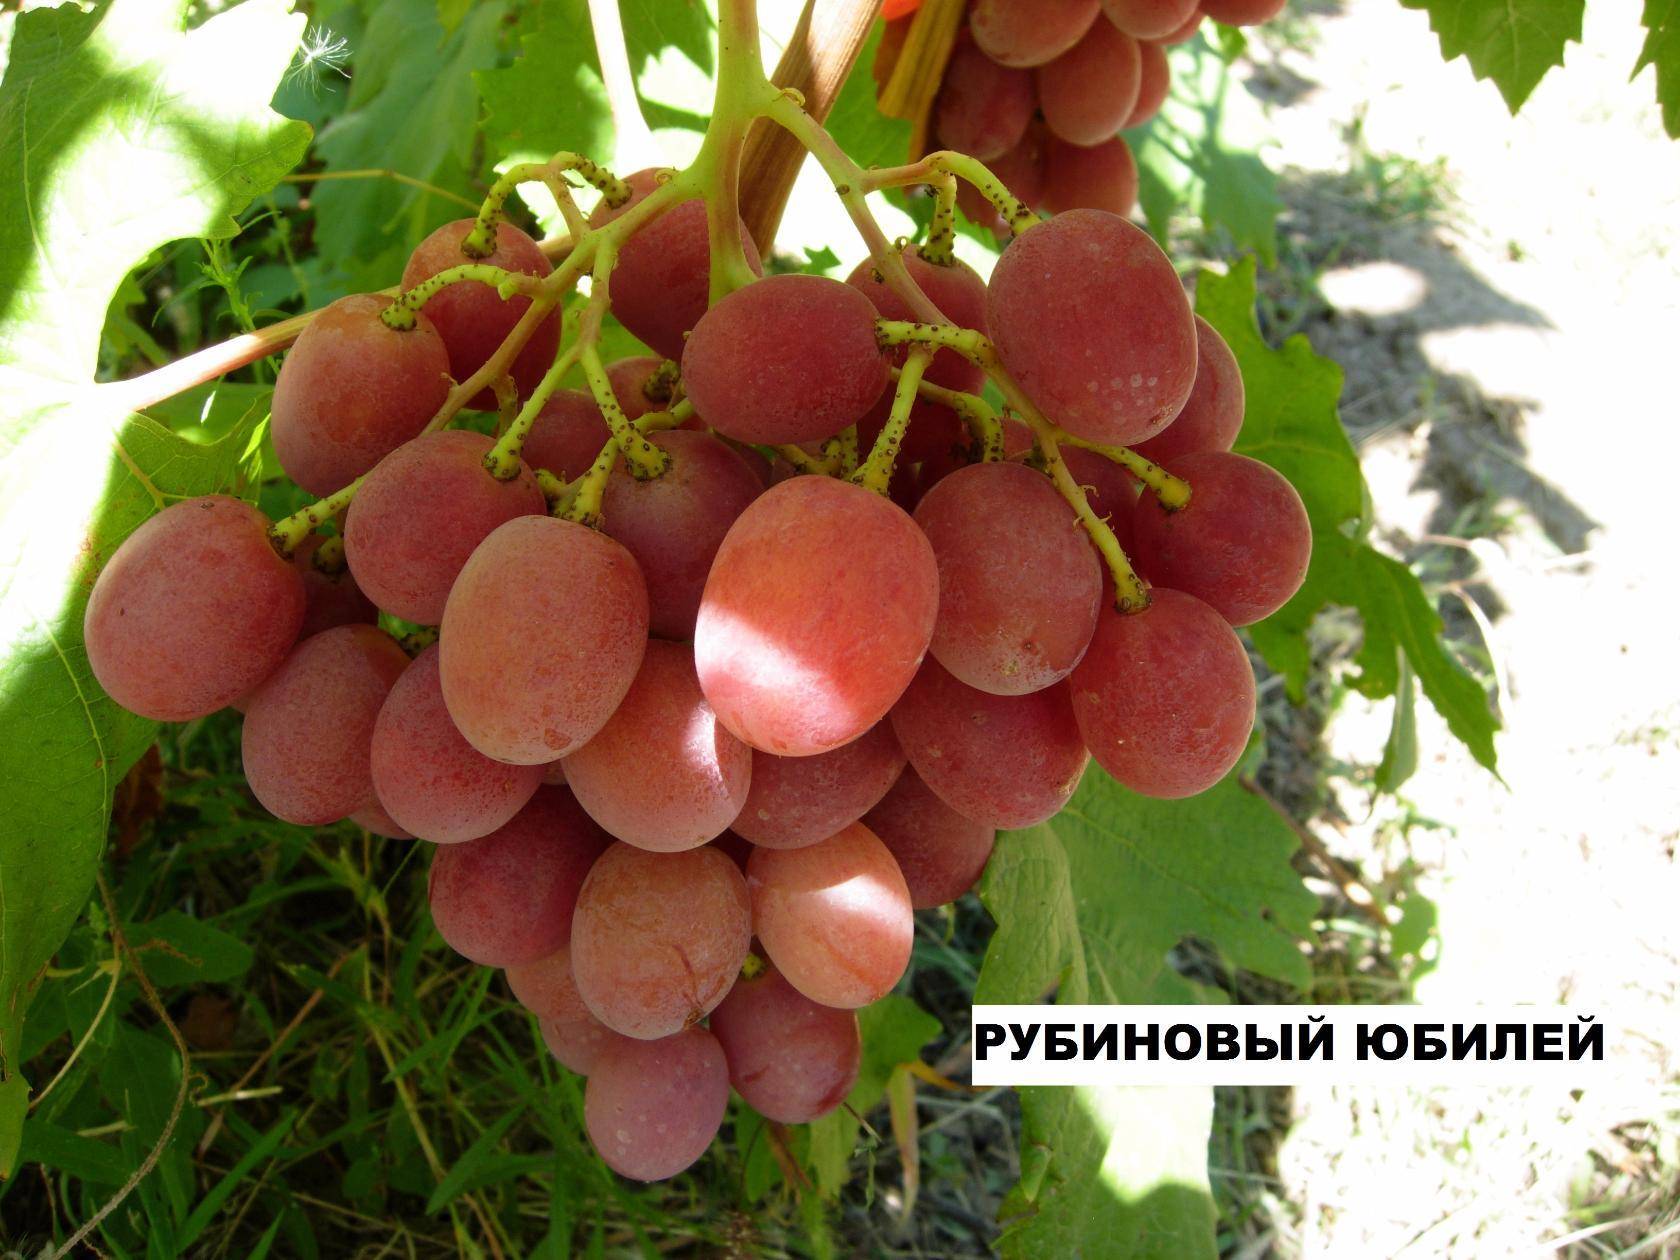 Виноград рубиновый юбилей: описание сорта, правила посадки и ухода, отзывы